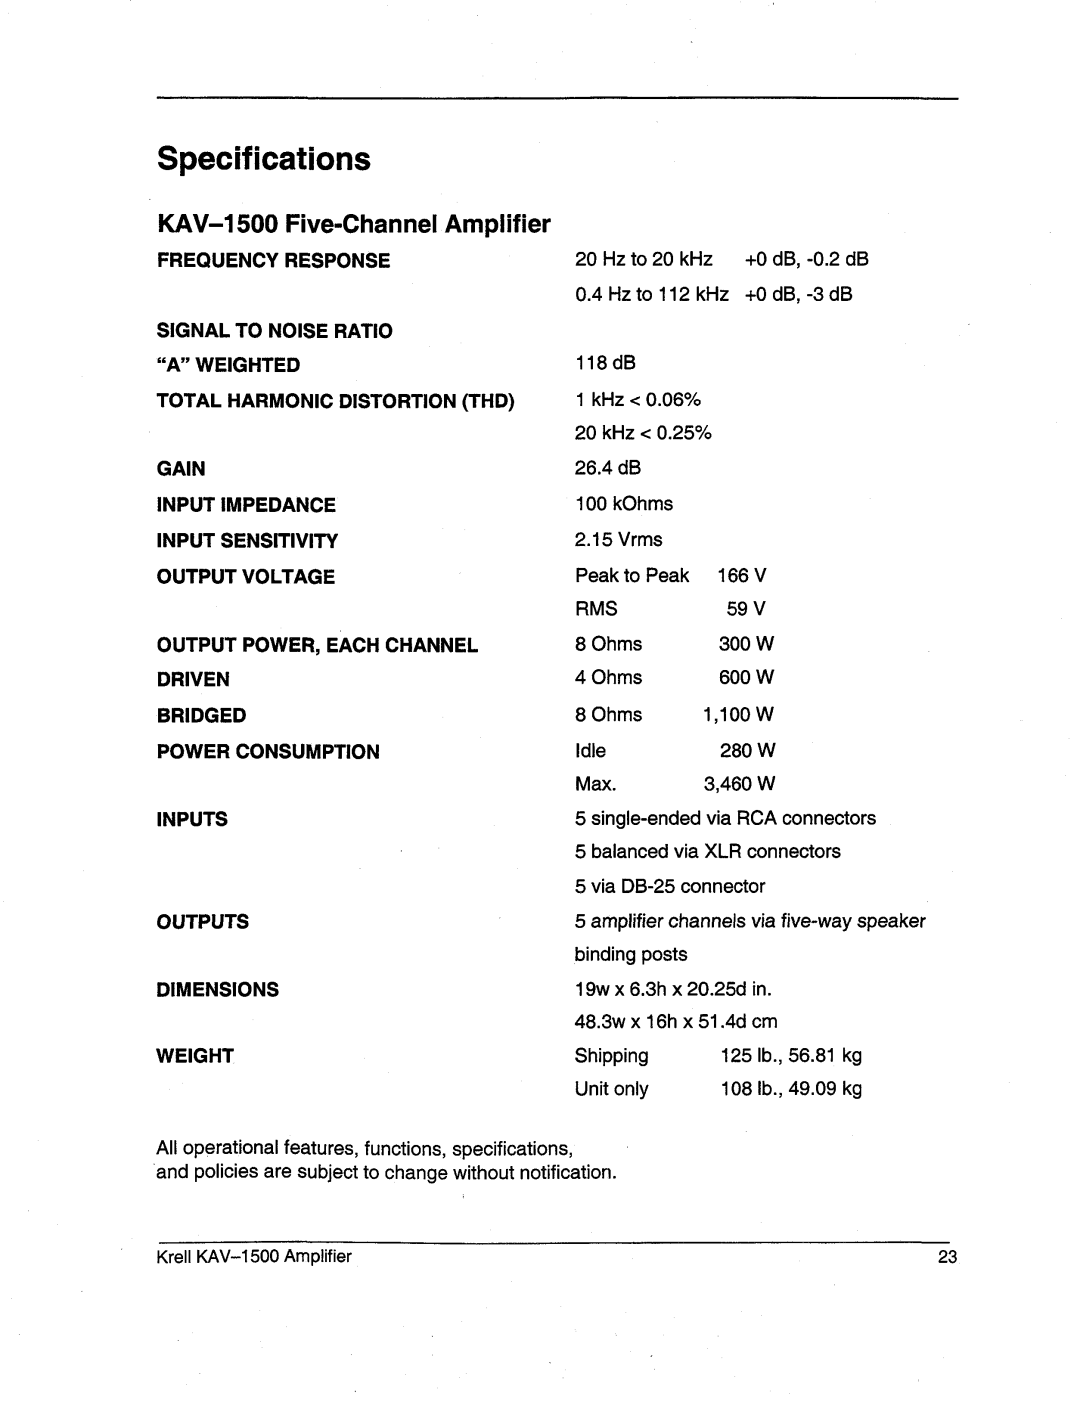 Krell Industries manual Specifications, KAV-1500Five-ChannelAmplifier 